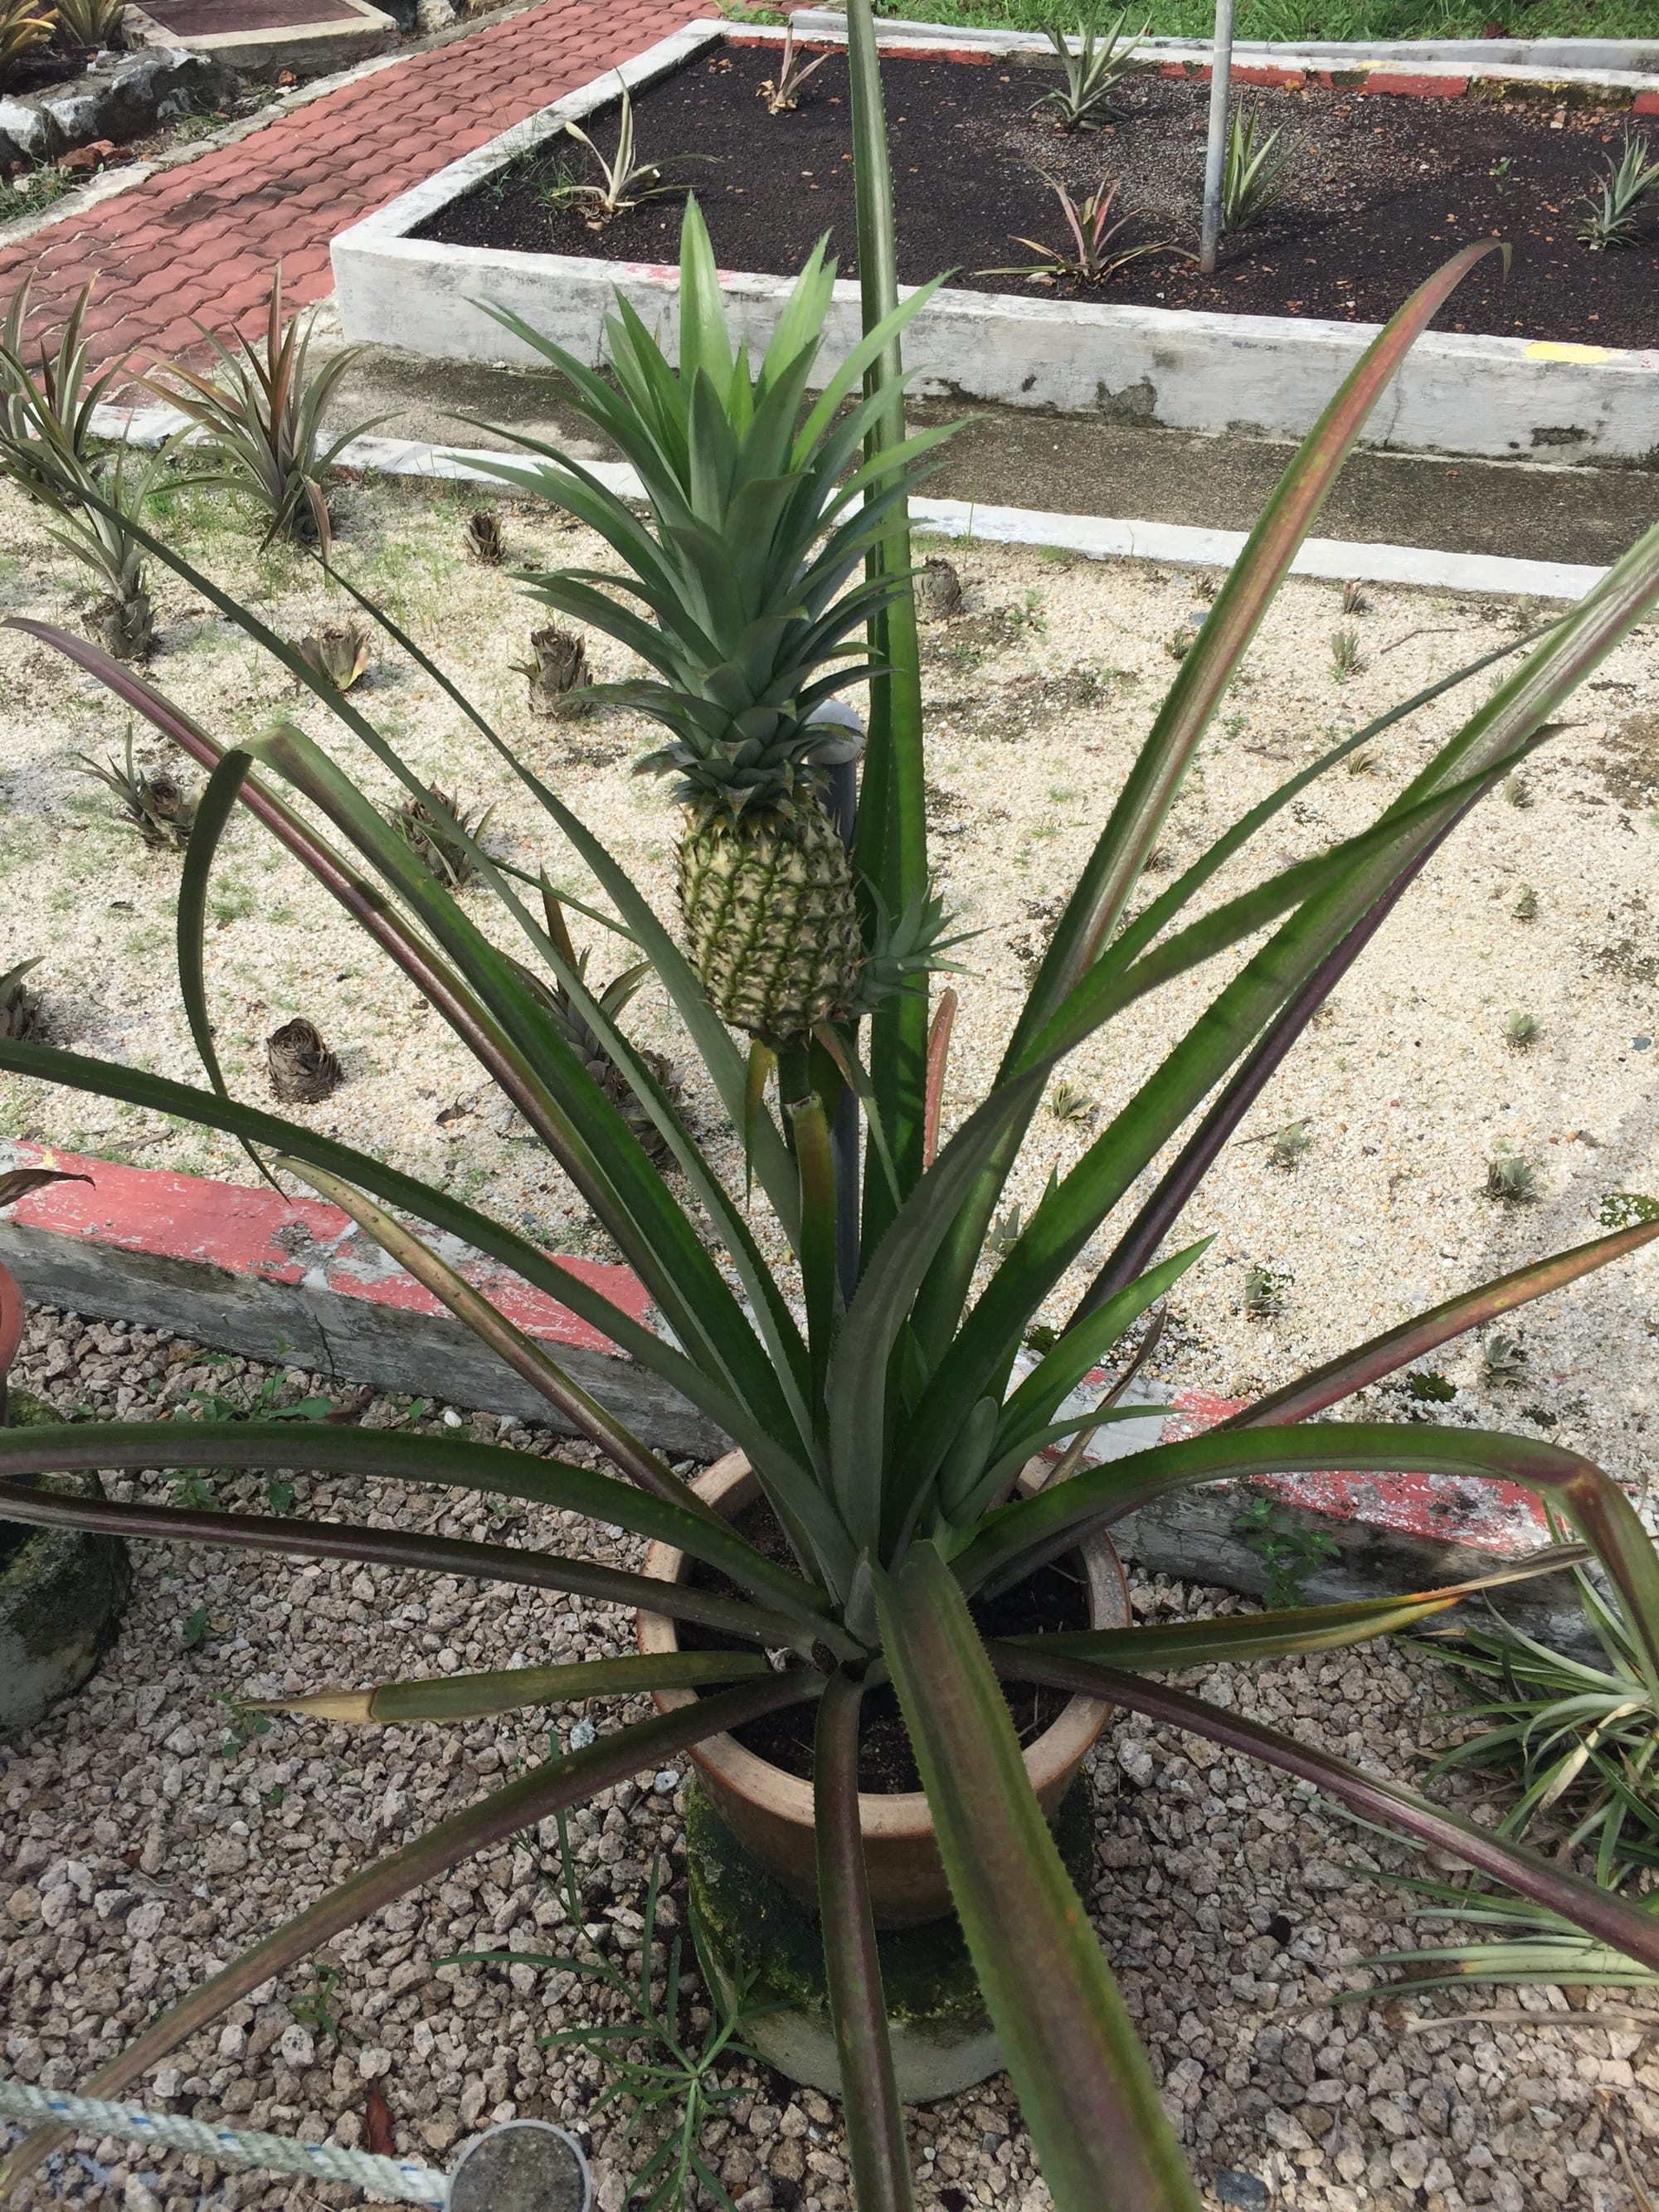 Photo by Author — pineapple garden — Muzium Nanas (Pineapple Museum), Johor, Malaysia